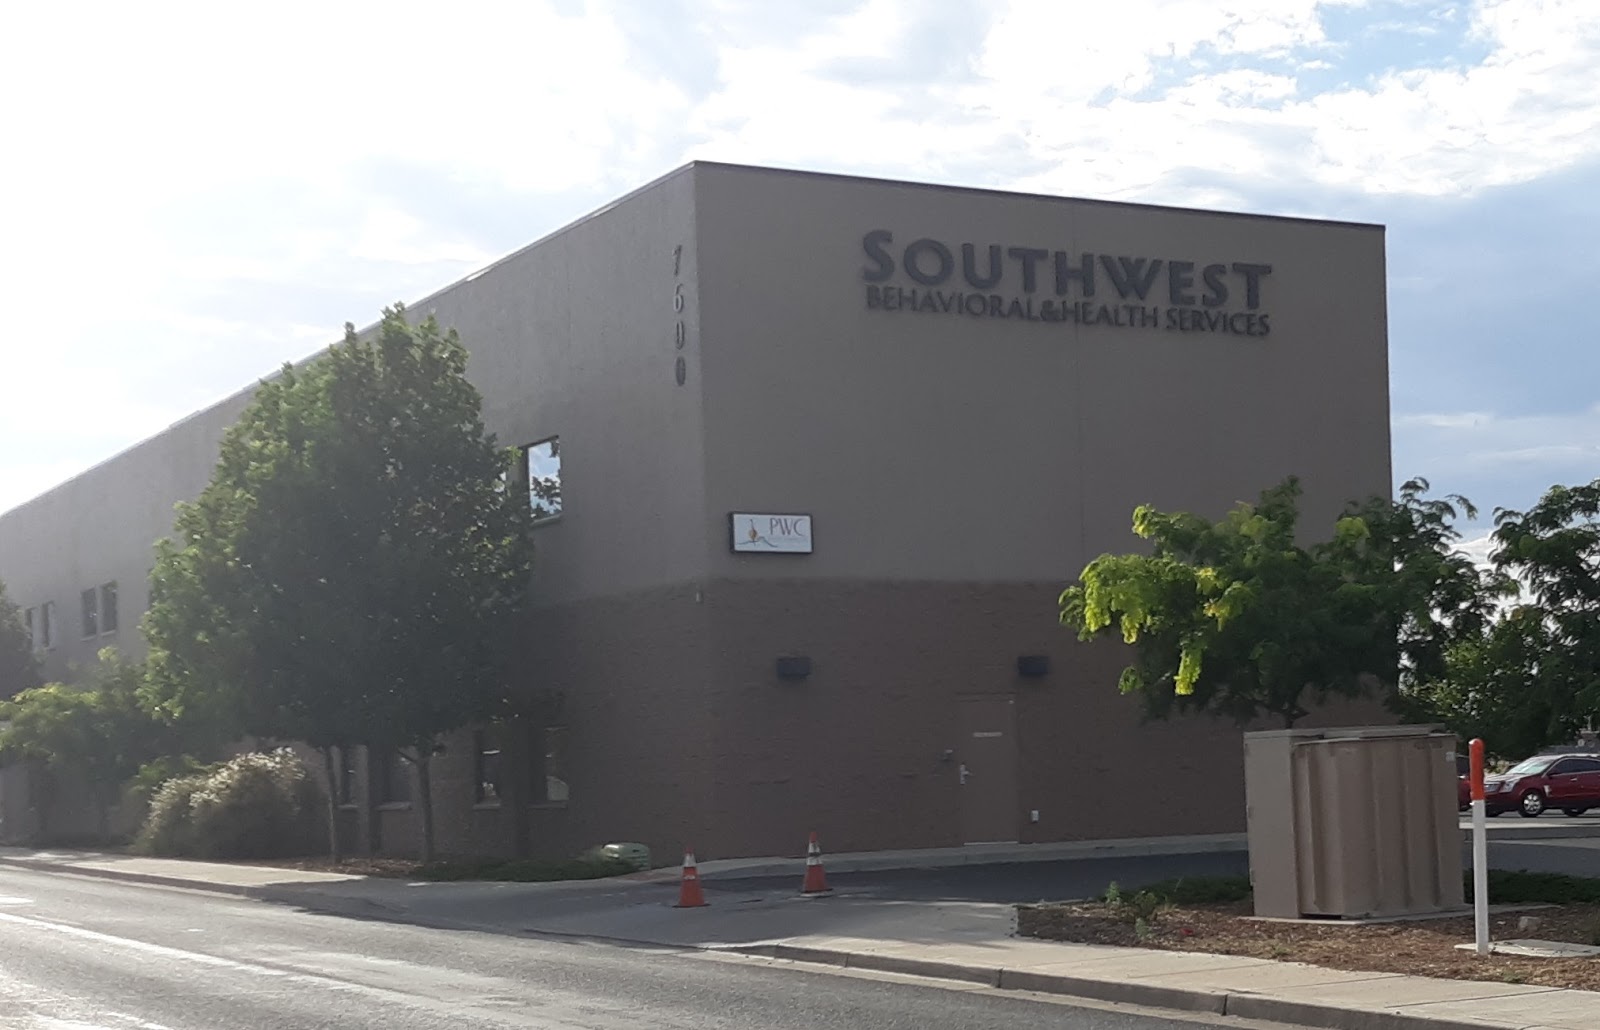 Southwest Behavioral Health Services - Prescott Valley